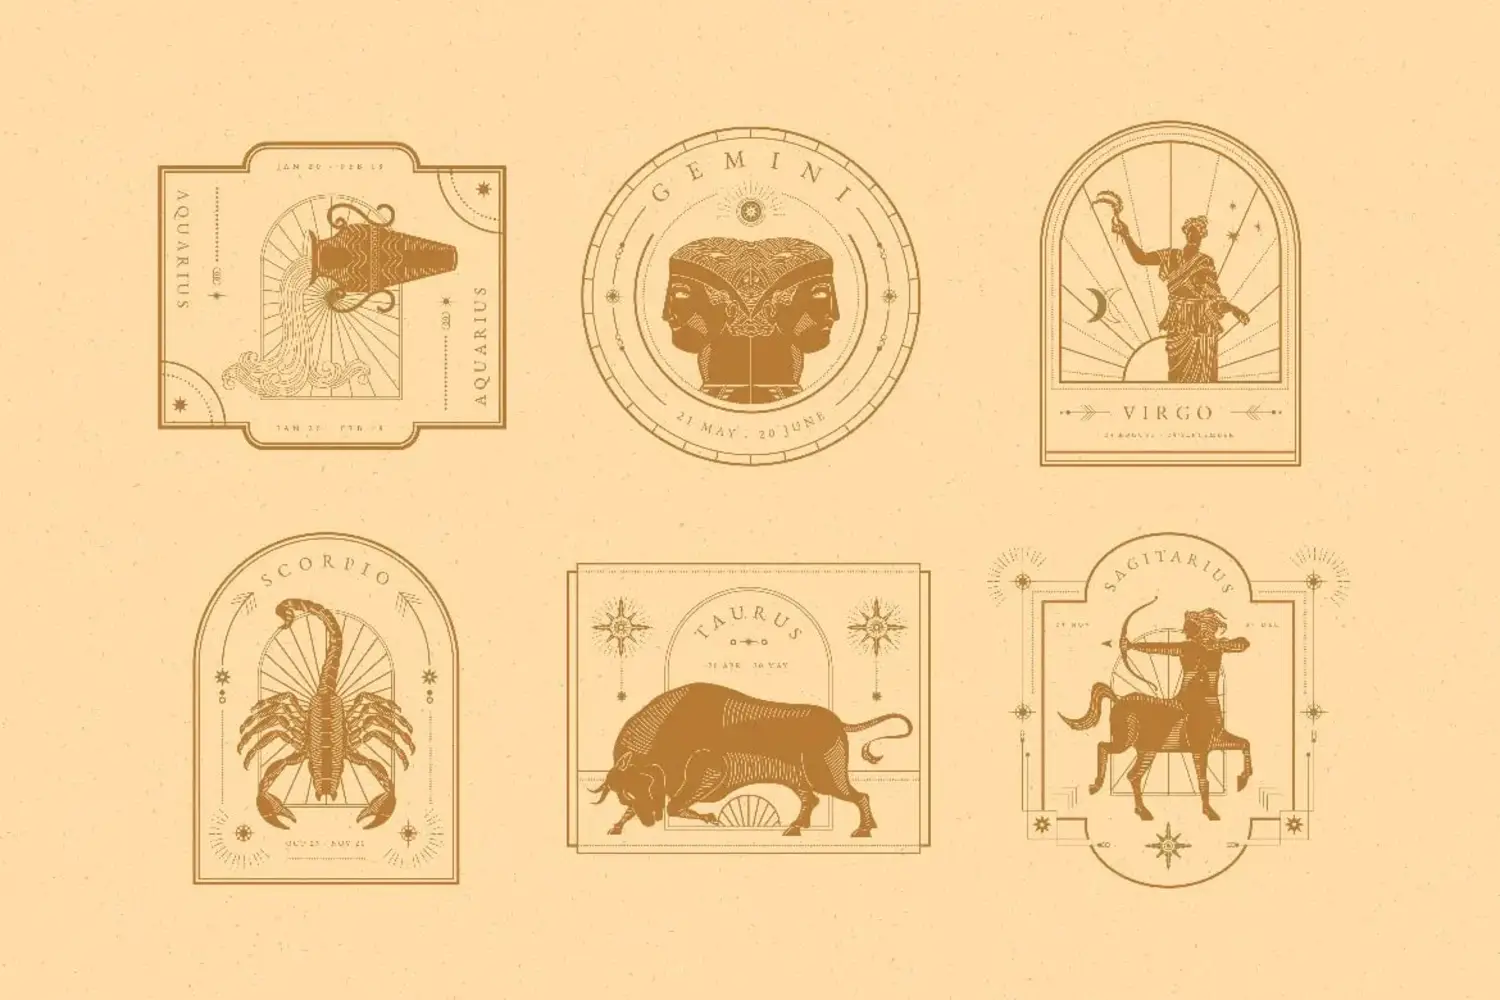 1876 12星座徽标图腾图案AI矢量元素素材 Vintage Zodiac Badges Illustration